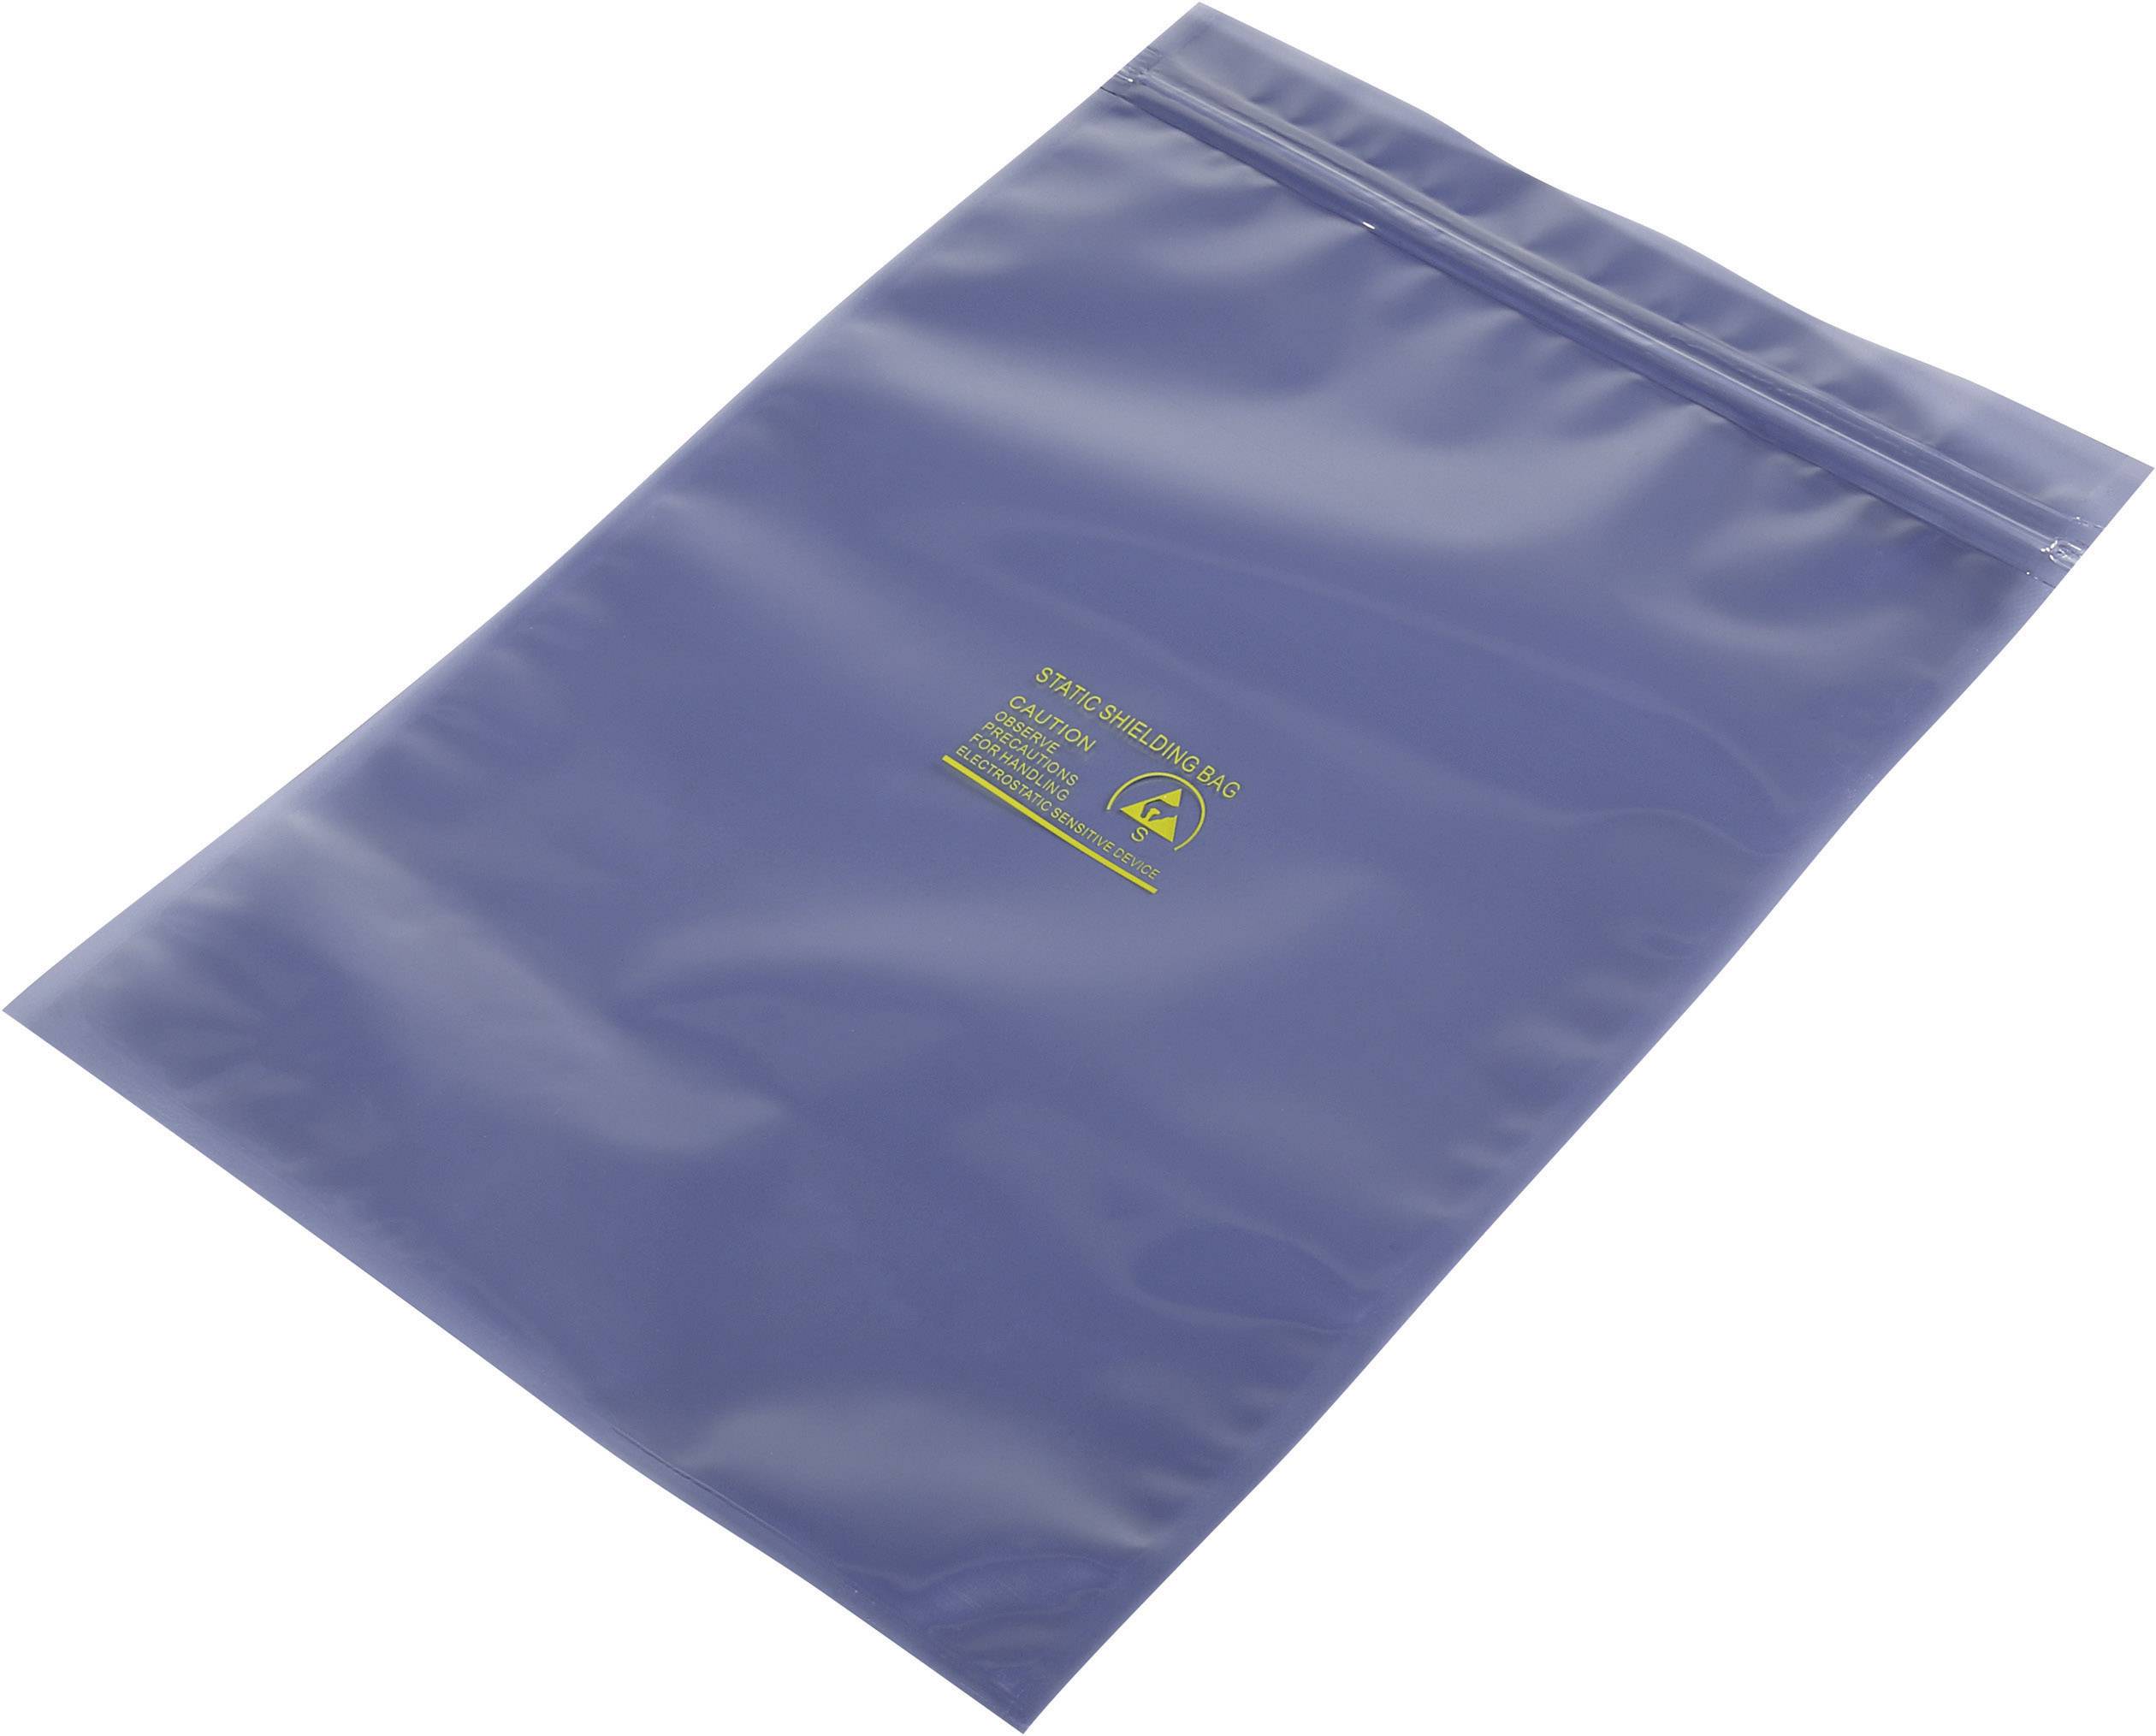 antistatische Tüten ESD Beutel innen 254 x 142 mm Dicke 75µm Abschirmbeutel außen 254 x 152 mm Samytronic ESD Shielding Bag 